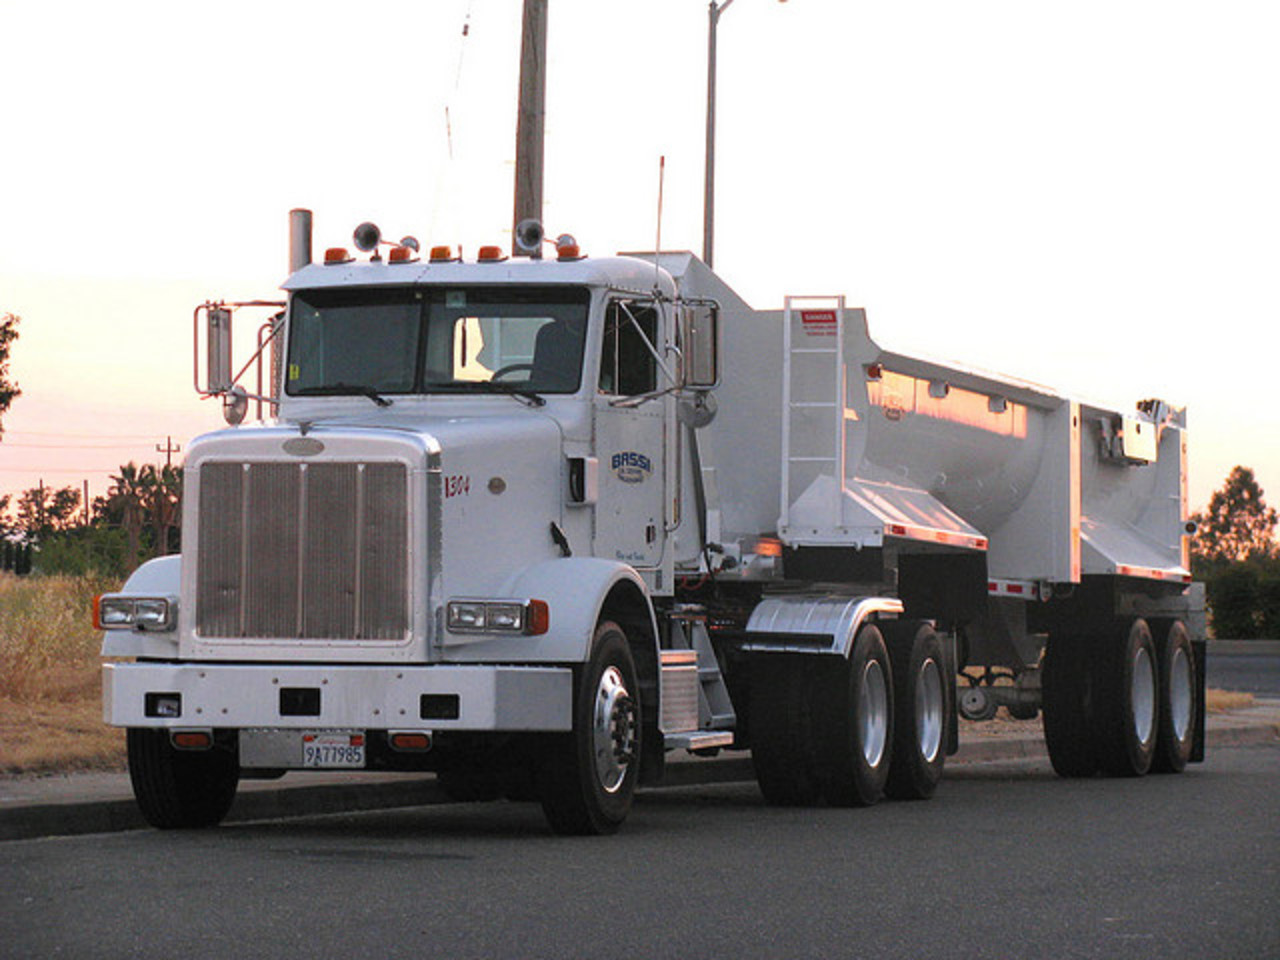 Peterbilt trucks - a gallery on Flickr